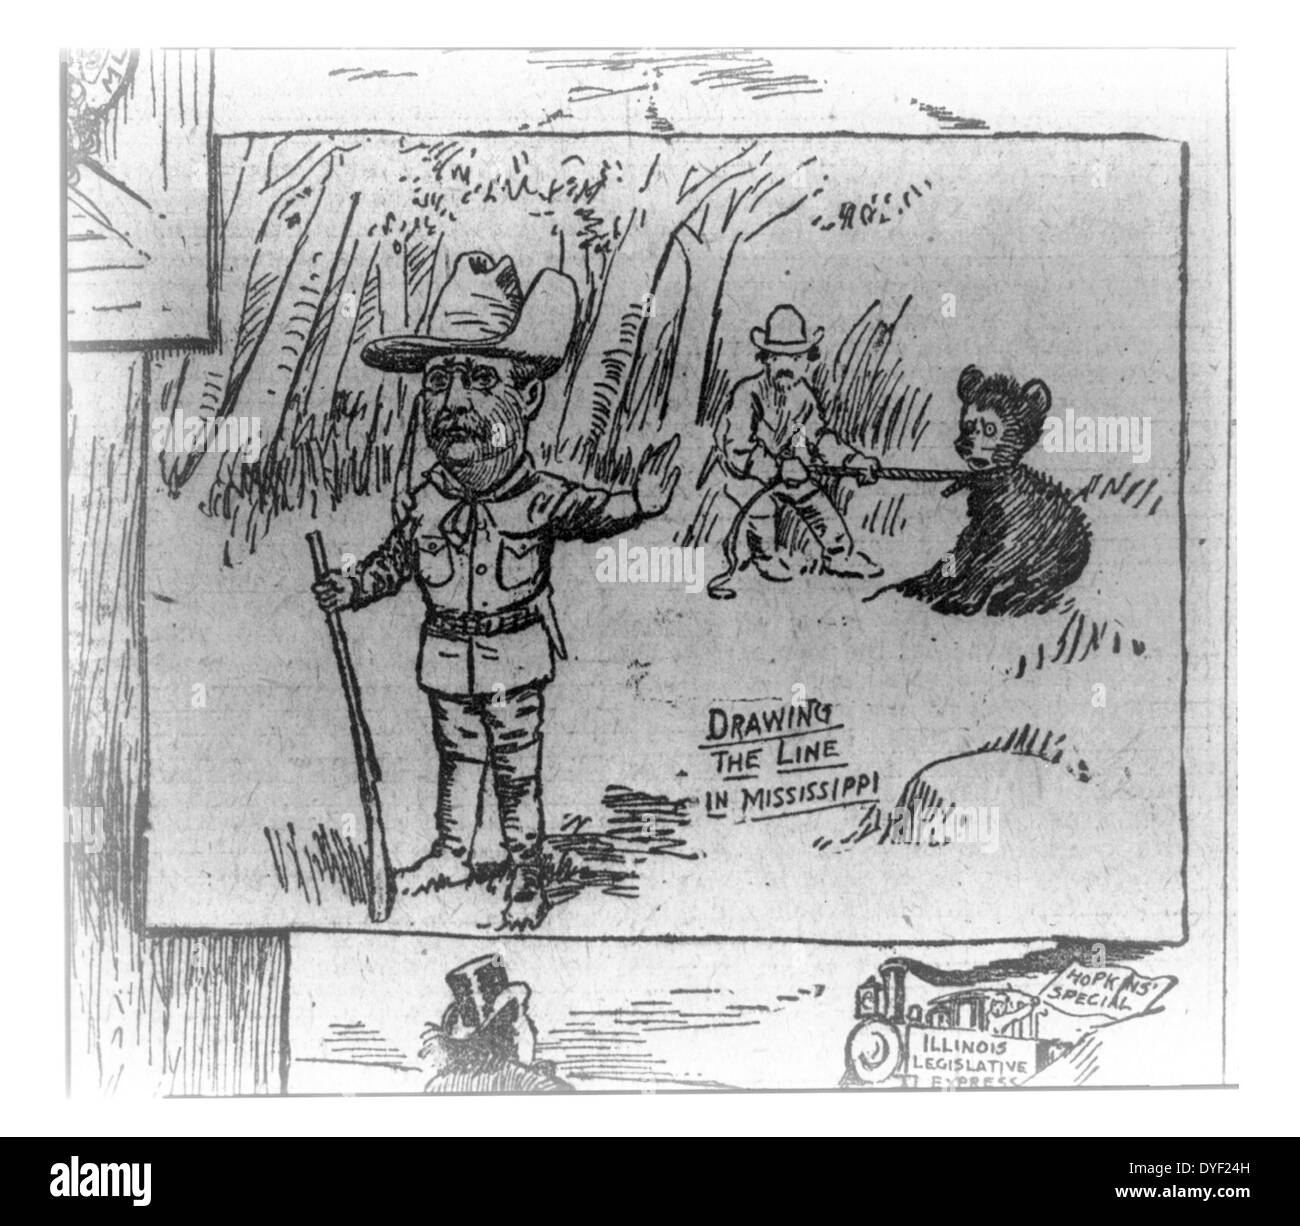 Tracer la ligne dans le Mississippi par Clifford Kennedy Berryman, 1869-1949, l'artiste publié en 1902. Photographie reproduit une caricature dans le journal Washington Post. La caricature est un détail d'une série appelée "Le Passing Show' sur le président Theodore Roosevelt a prétendu refus d'abattre un ours enchaîné tandis que sur un voyage de chasse au Mississippi. Le petit ours, Bruin, est devenu si populaire que Berryman utilisés fréquemment dans les caricatures plus tard lui sur plusieurs sujets. Bien que Berryman a contribué à populariser l'association de Teddy Roosevelt avec l'ours, il n'a pas inventé le jouet ours en peluche. Banque D'Images